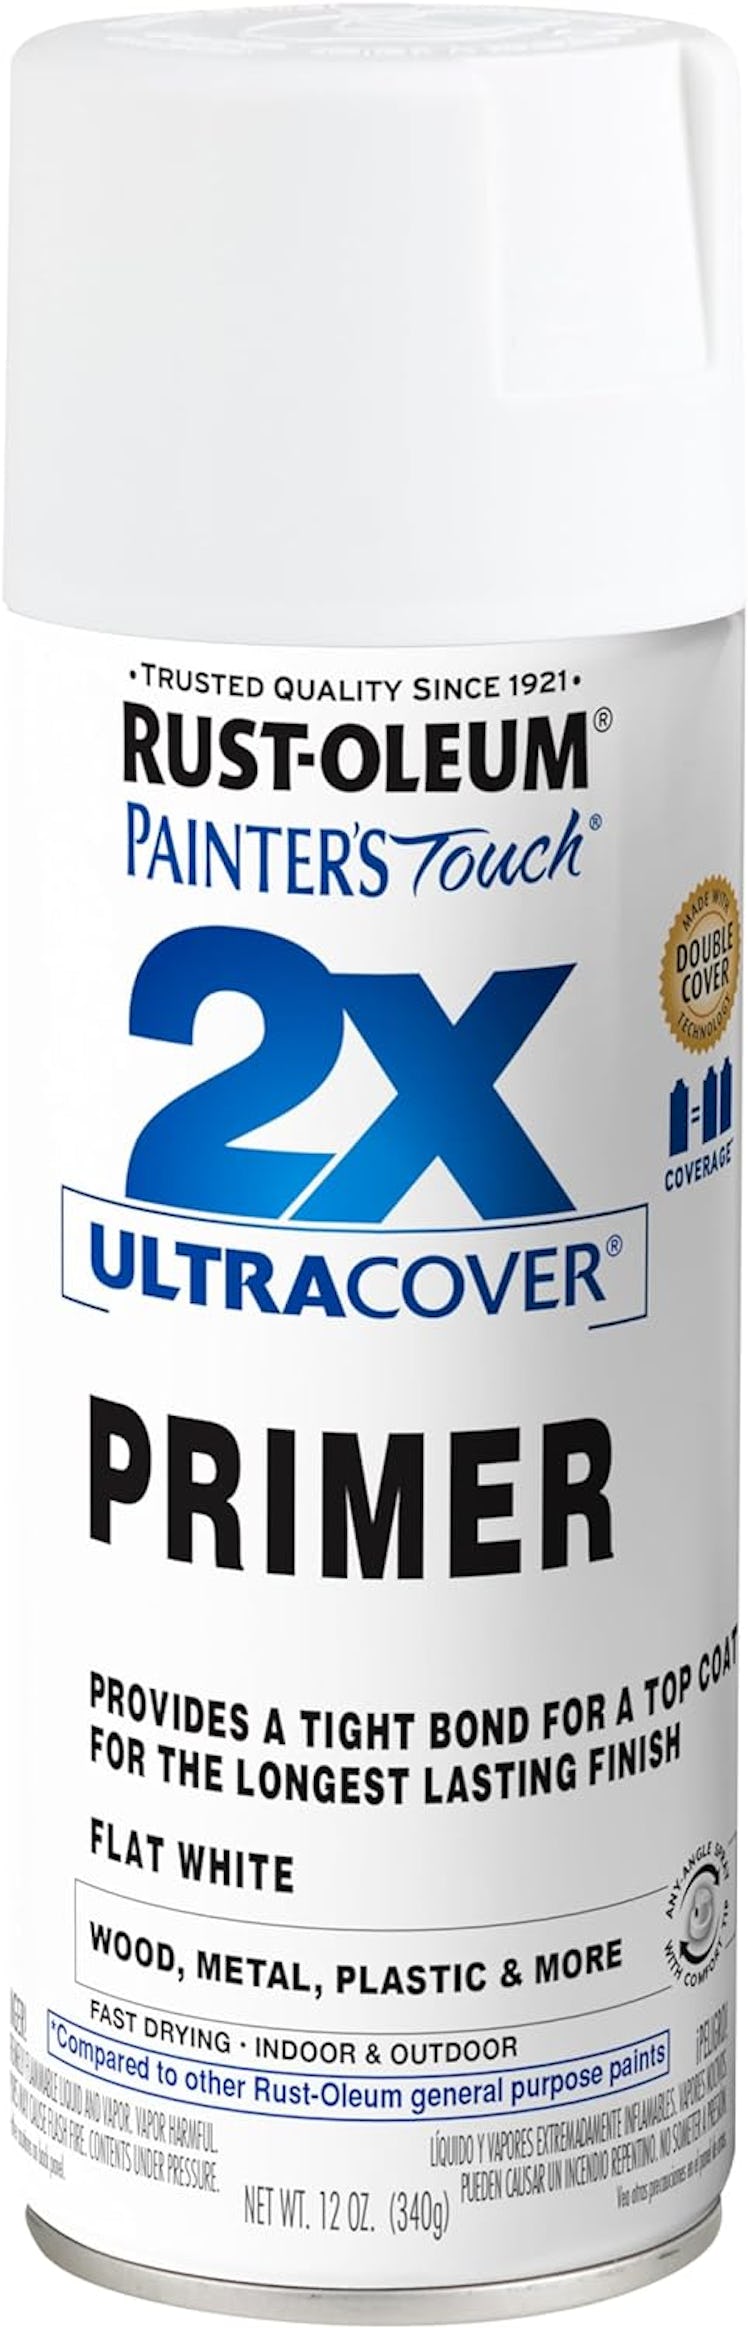 Rust-Oleum Painter's Spray Primer, 12 Oz.